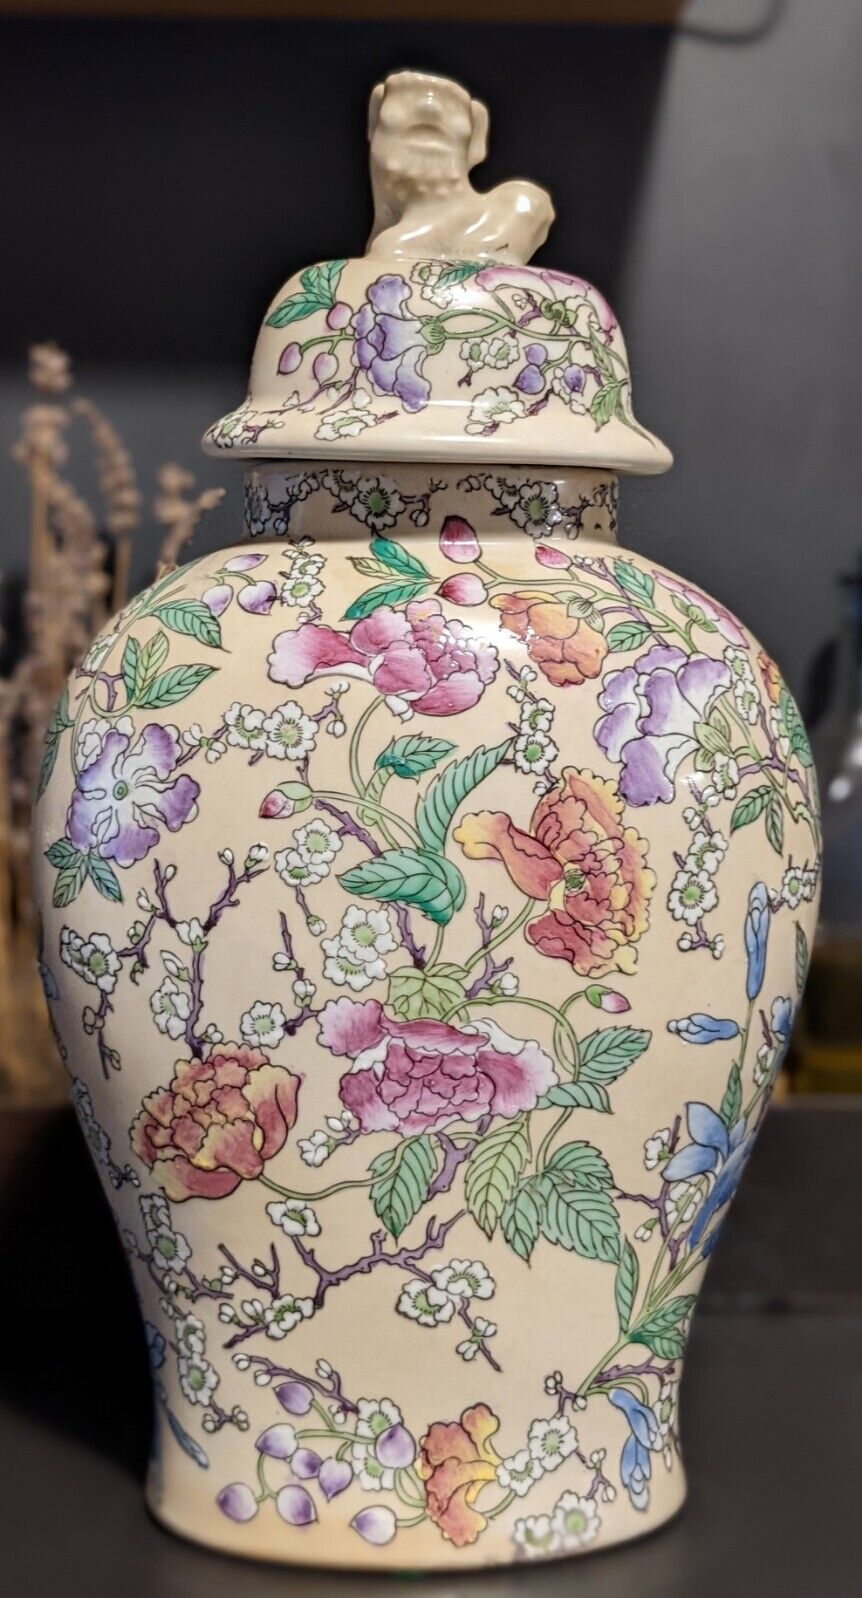 Frederick Cooper Vintage Ceramic Porcelain Floral Painted Asian Urn Jug Vase